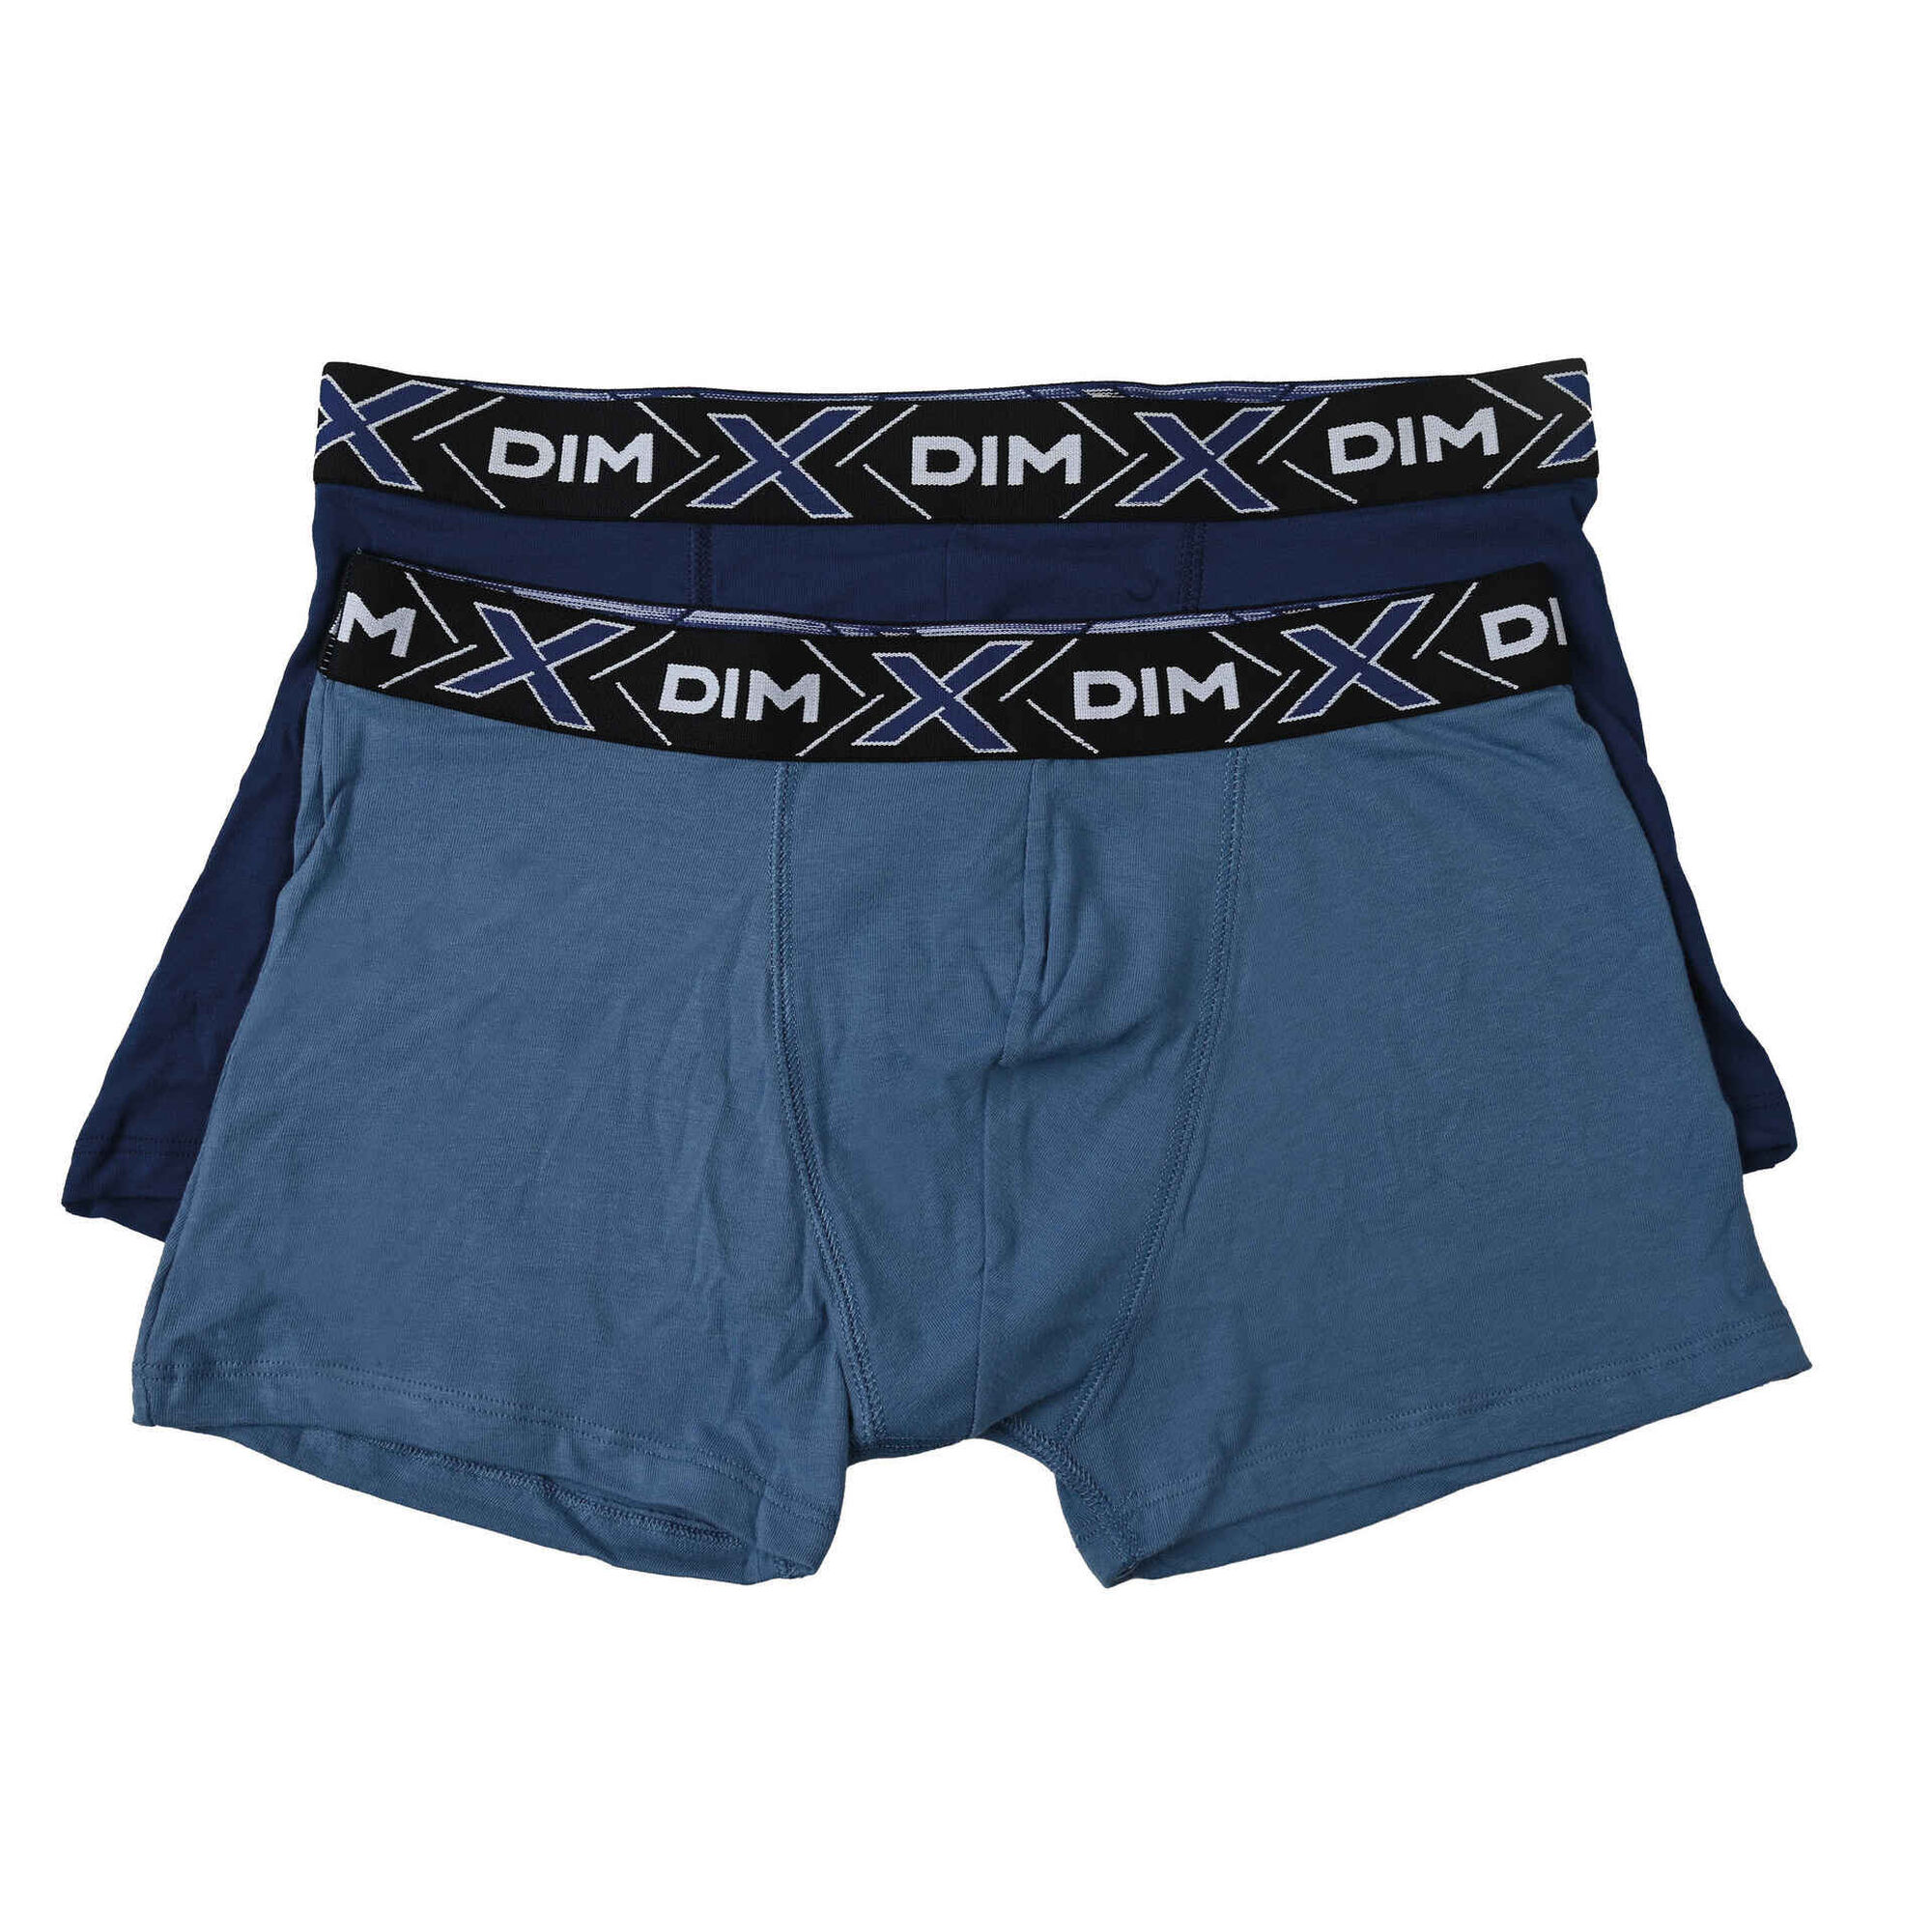 DIM - Pack 2 Boxers Cotton Streech Homem Castanho e Azul